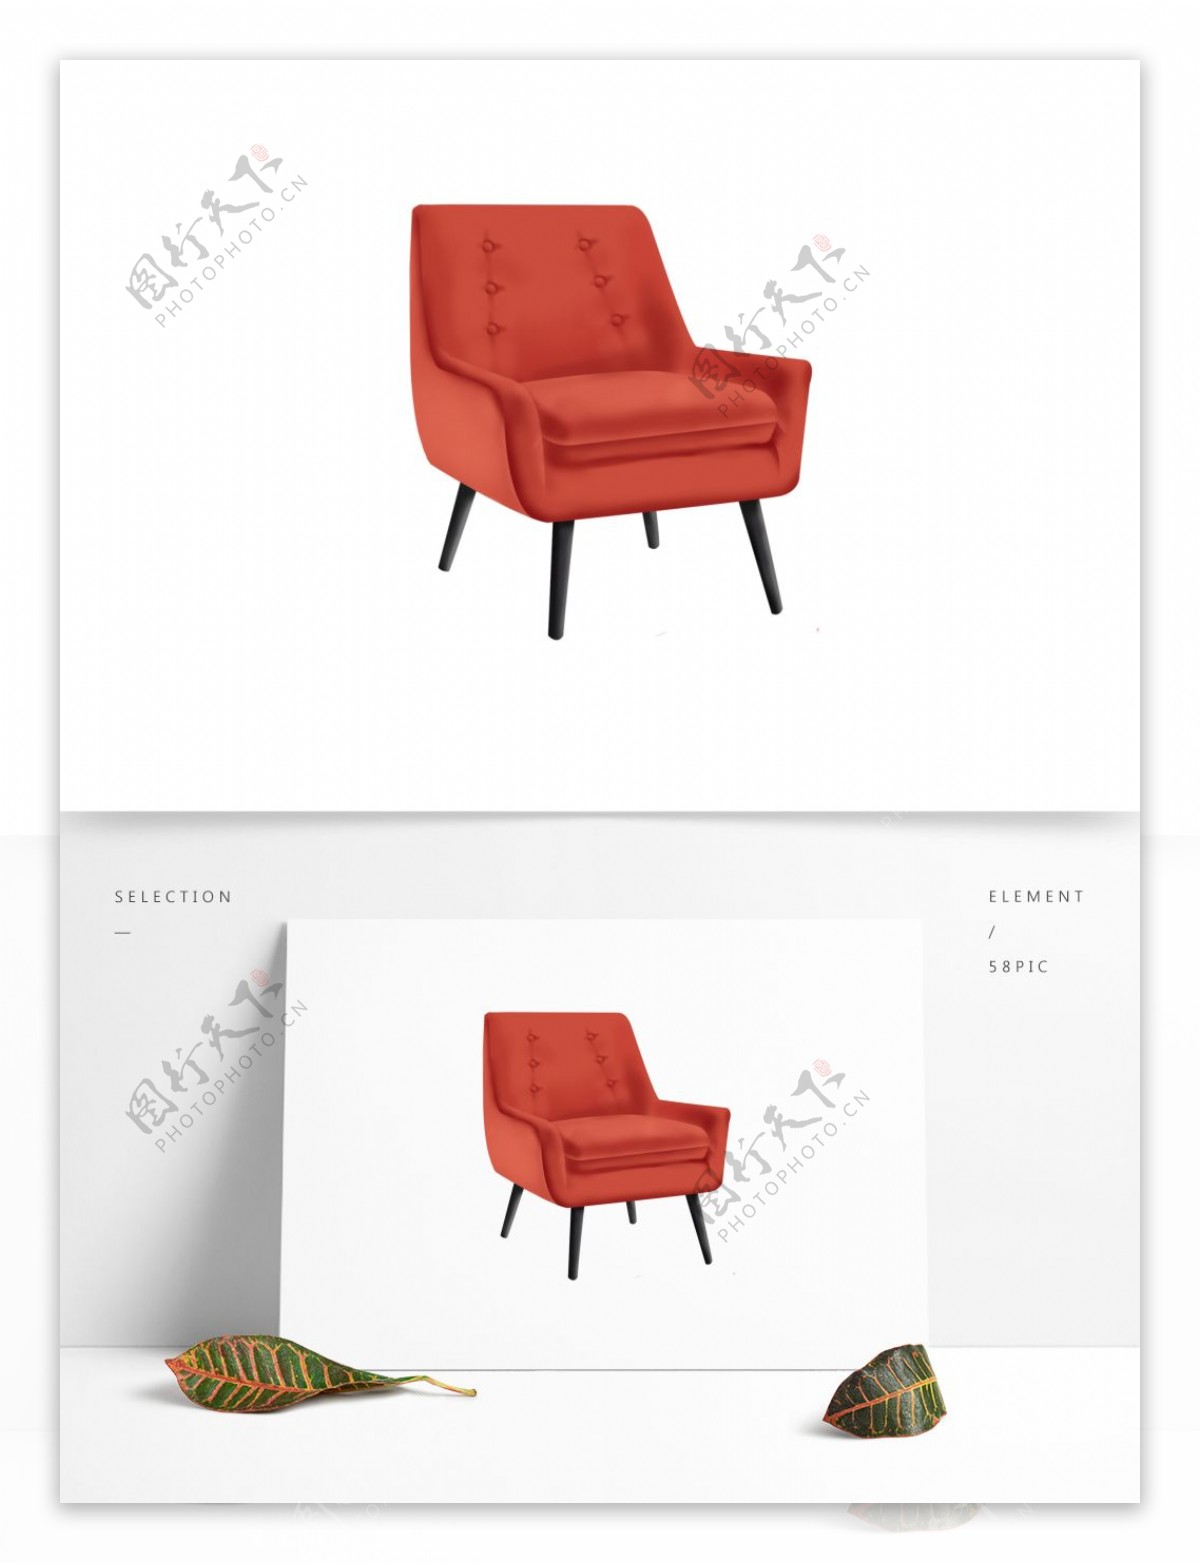 手绘家具沙发椅红色